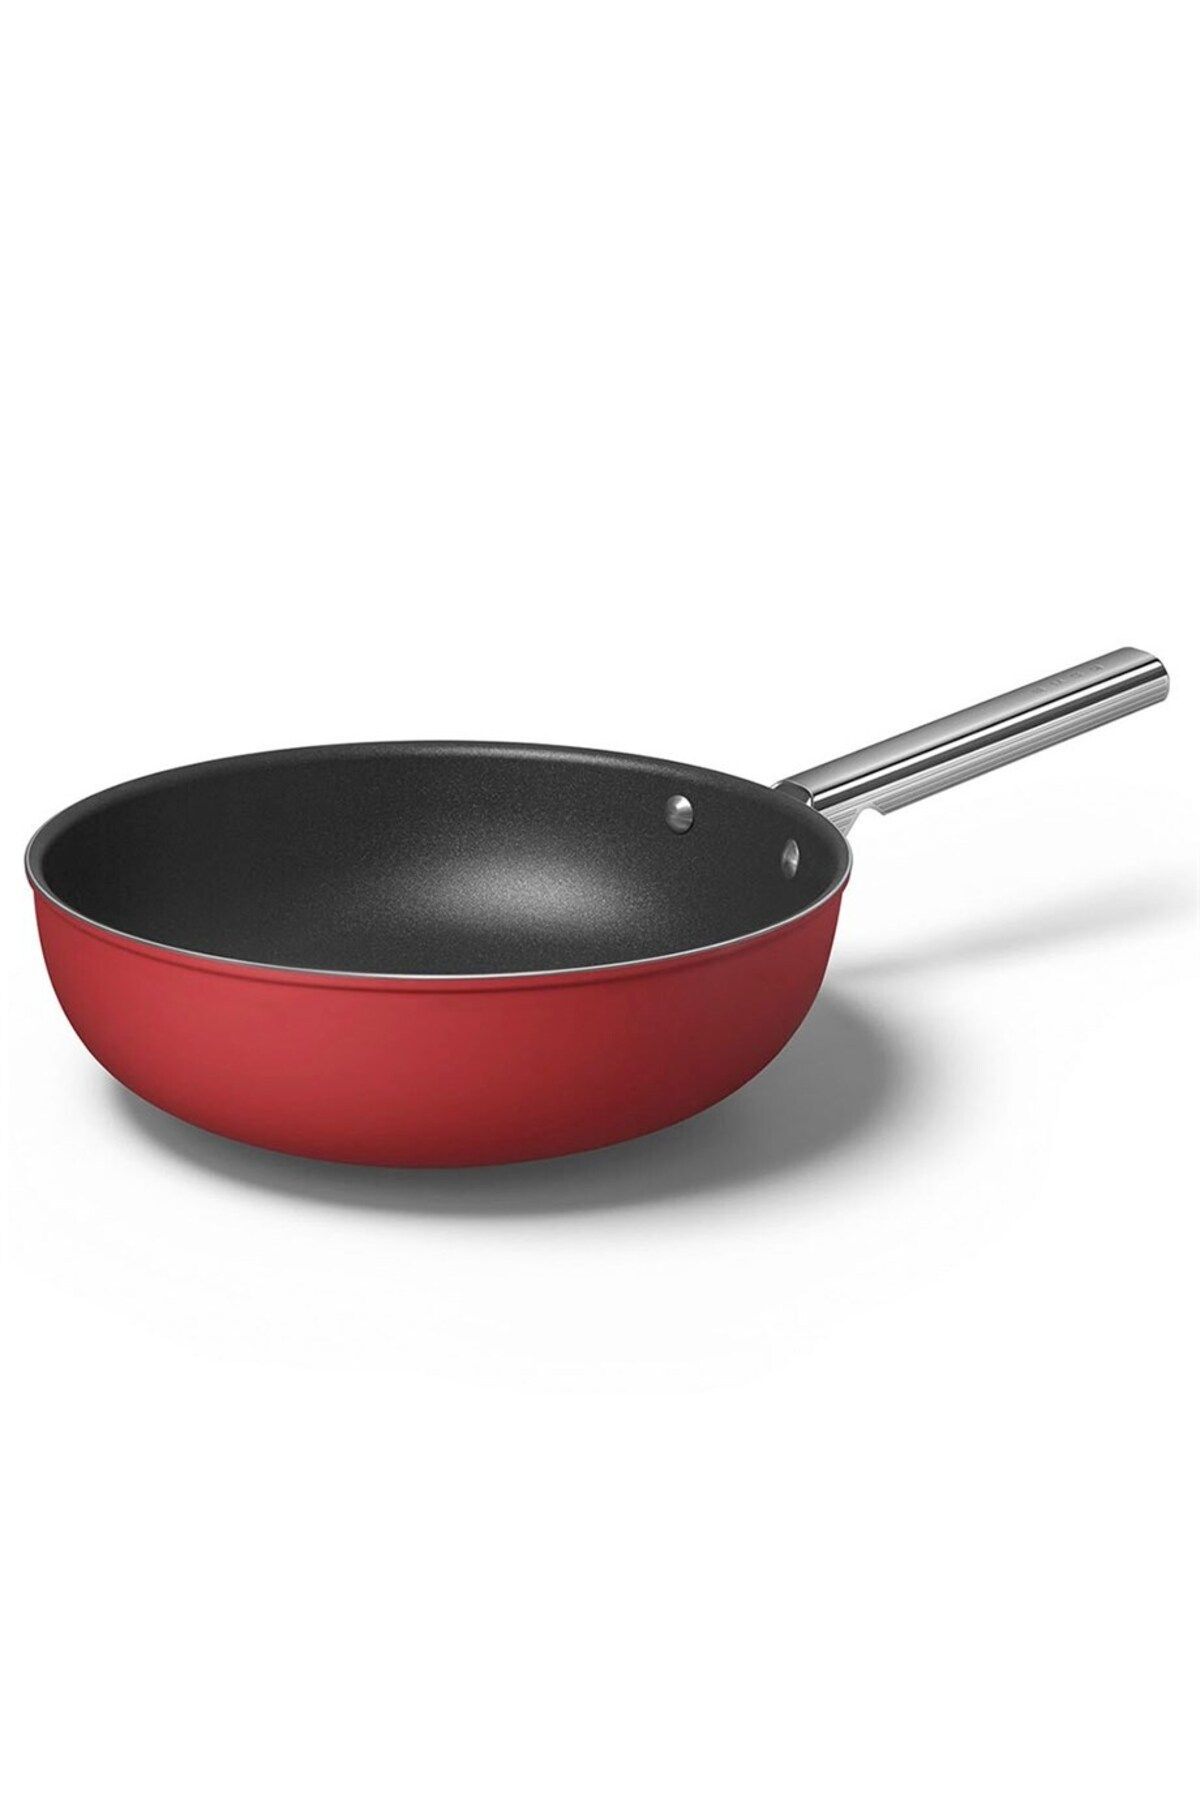 Smeg Cookware 50's Style Kırmızı Wok Tava 30 Cm